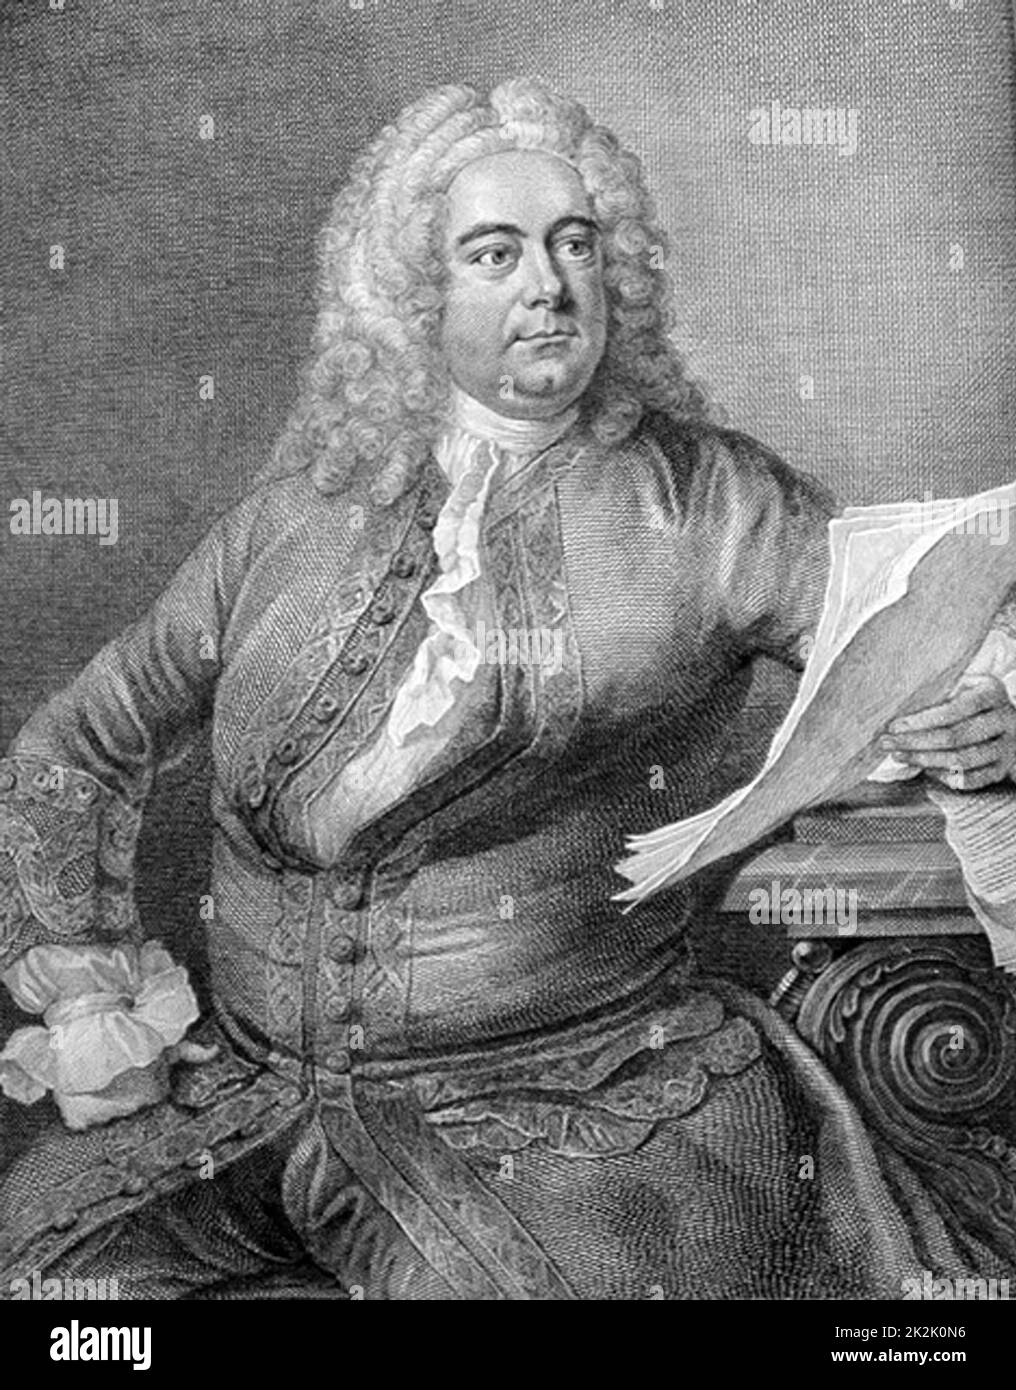 George Frederic Handel (1685-1759) compositeur anglais baroque d'origine allemande. Gravure de portrait de l'édition de Thomas Arne des œuvres de Handel. Banque D'Images